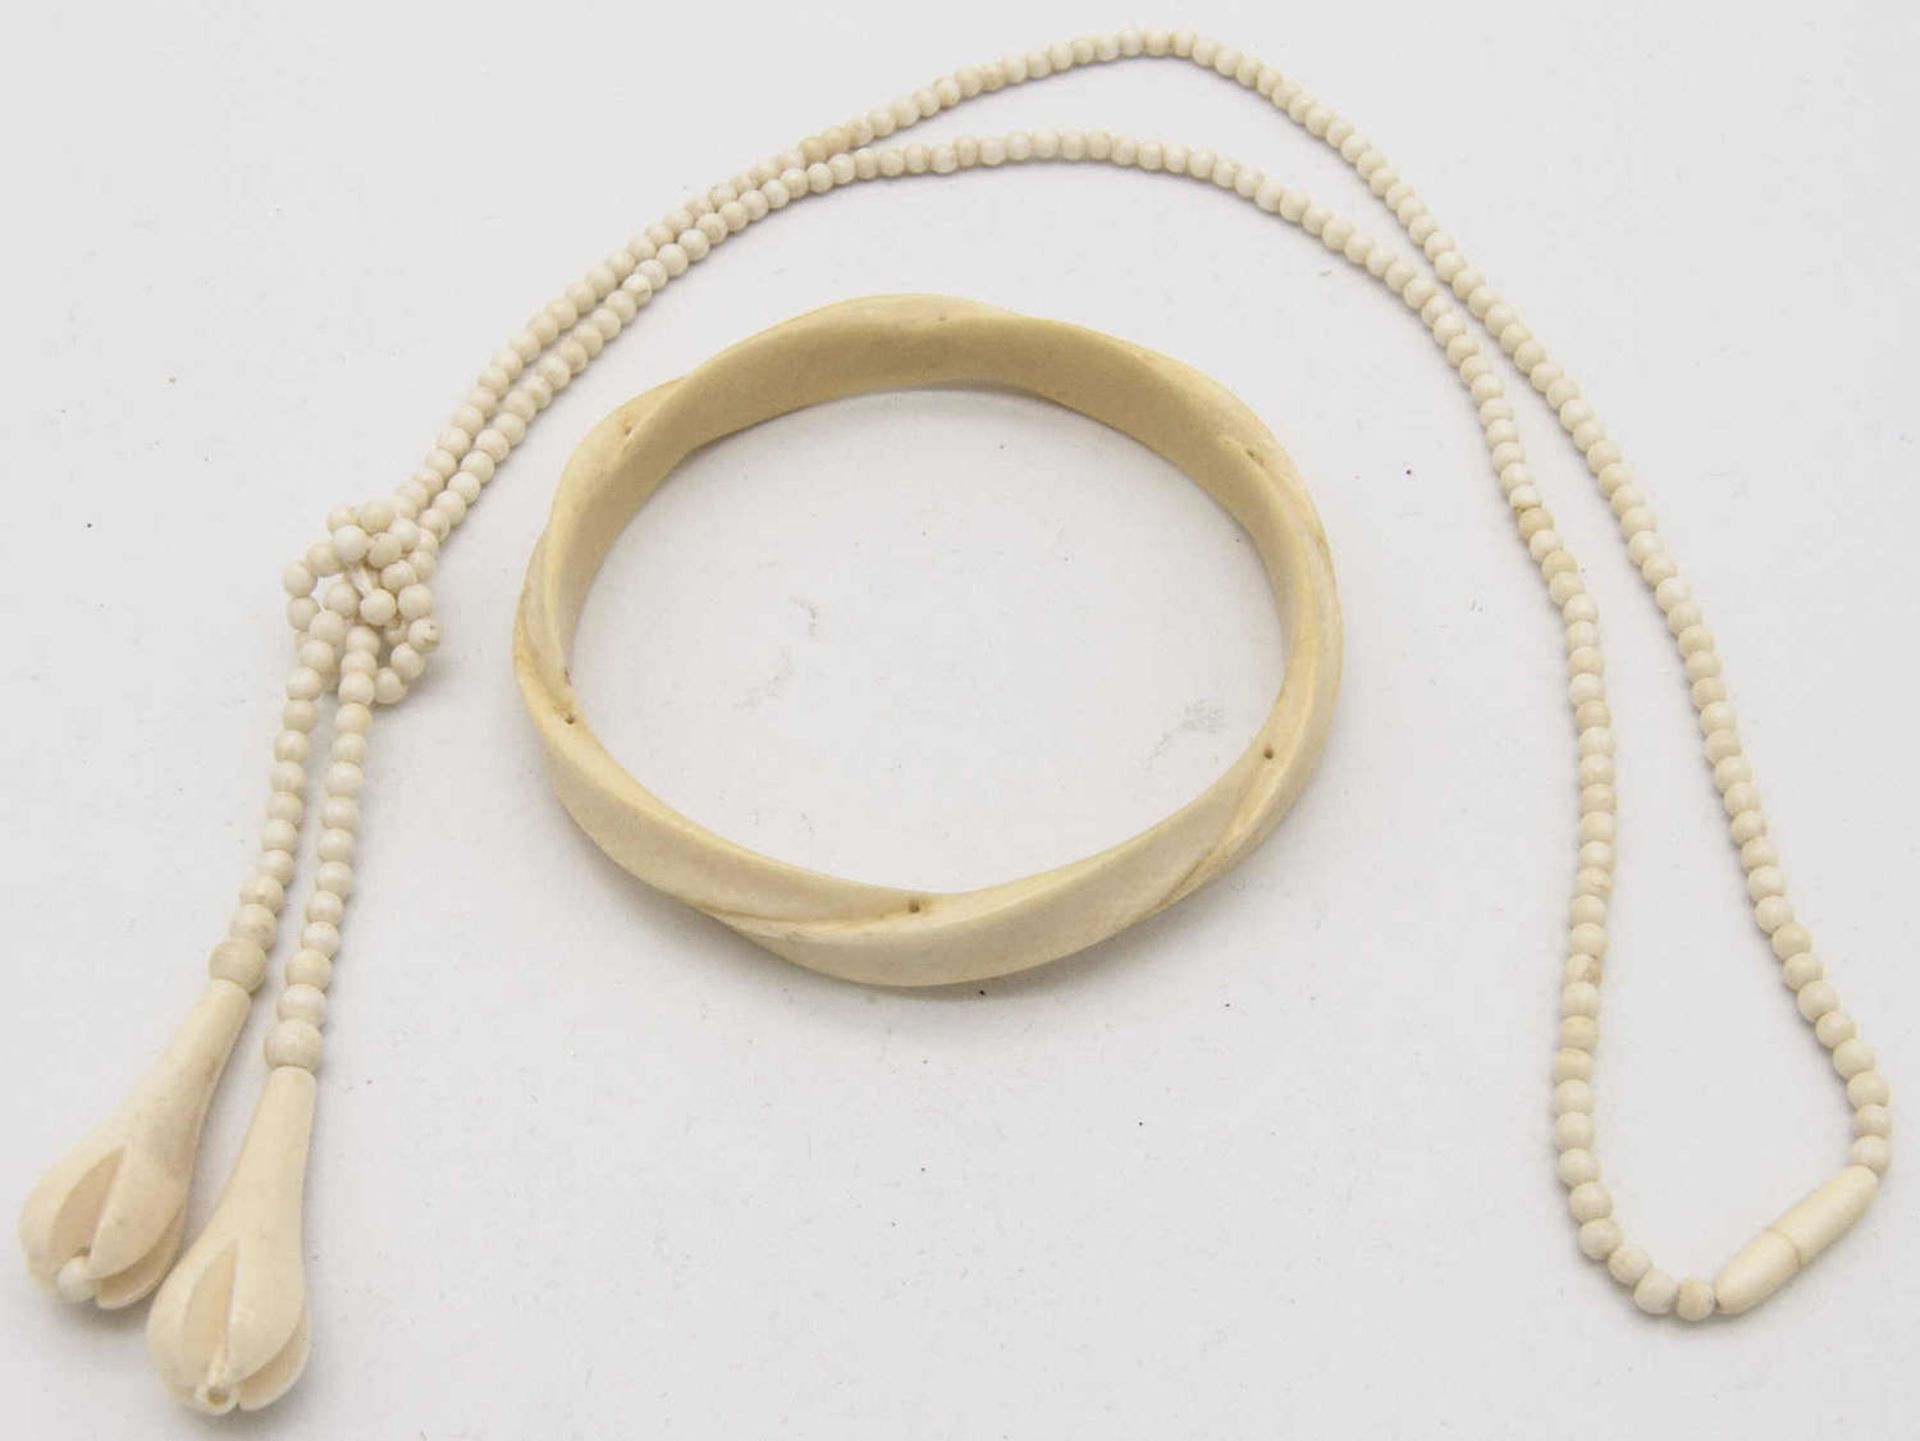 Lot Bein - Schmuck, bestehend aus einem Armreif und einer Kette.Lot ivory- jewelry, consisting of